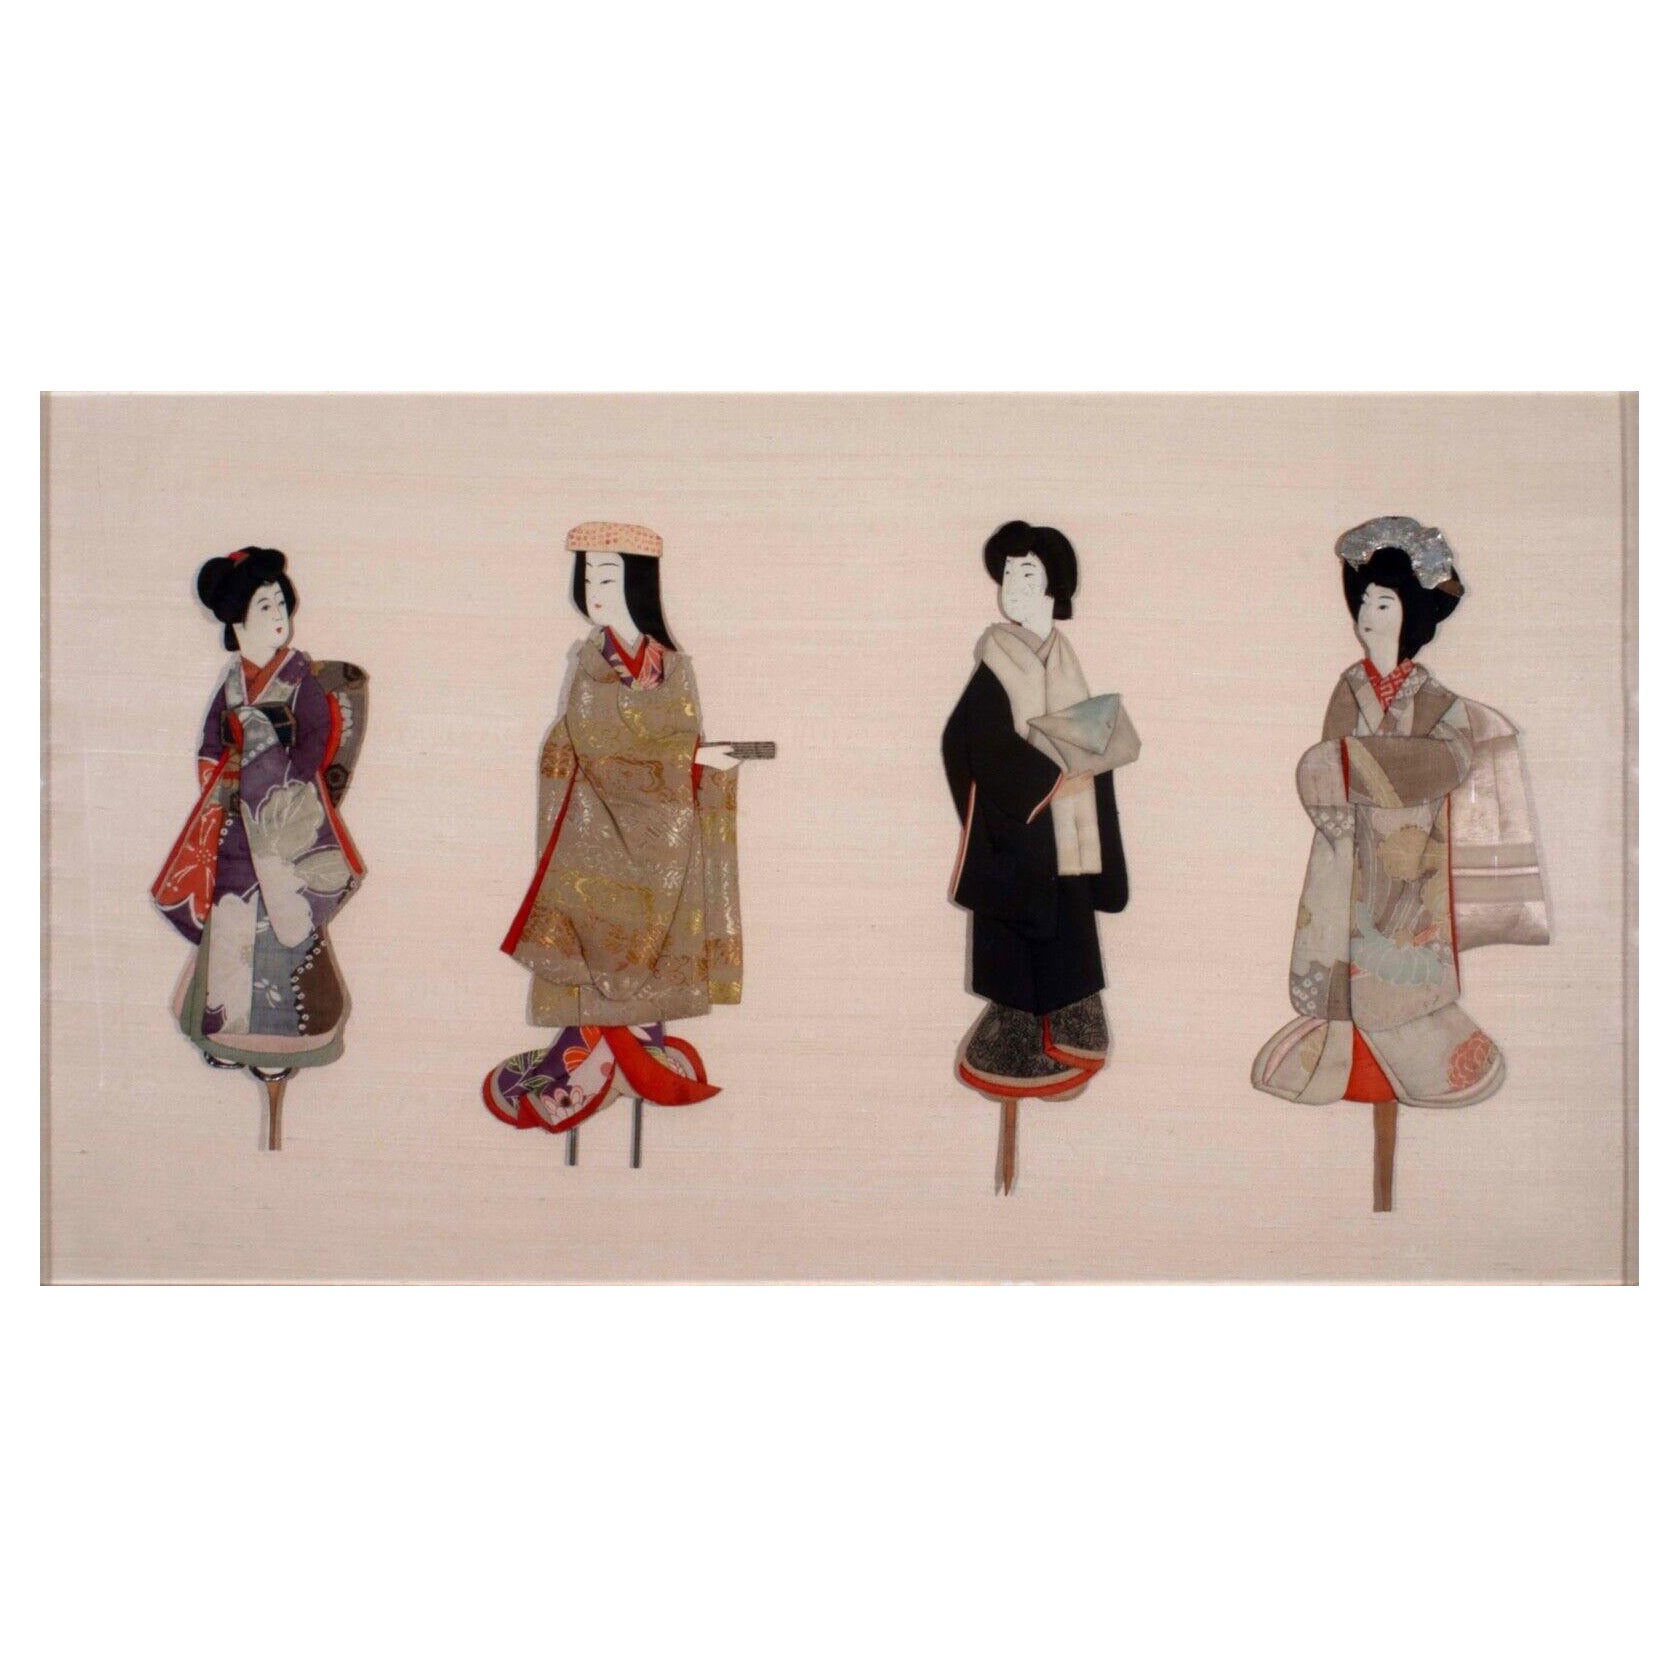 What is a geisha doll?